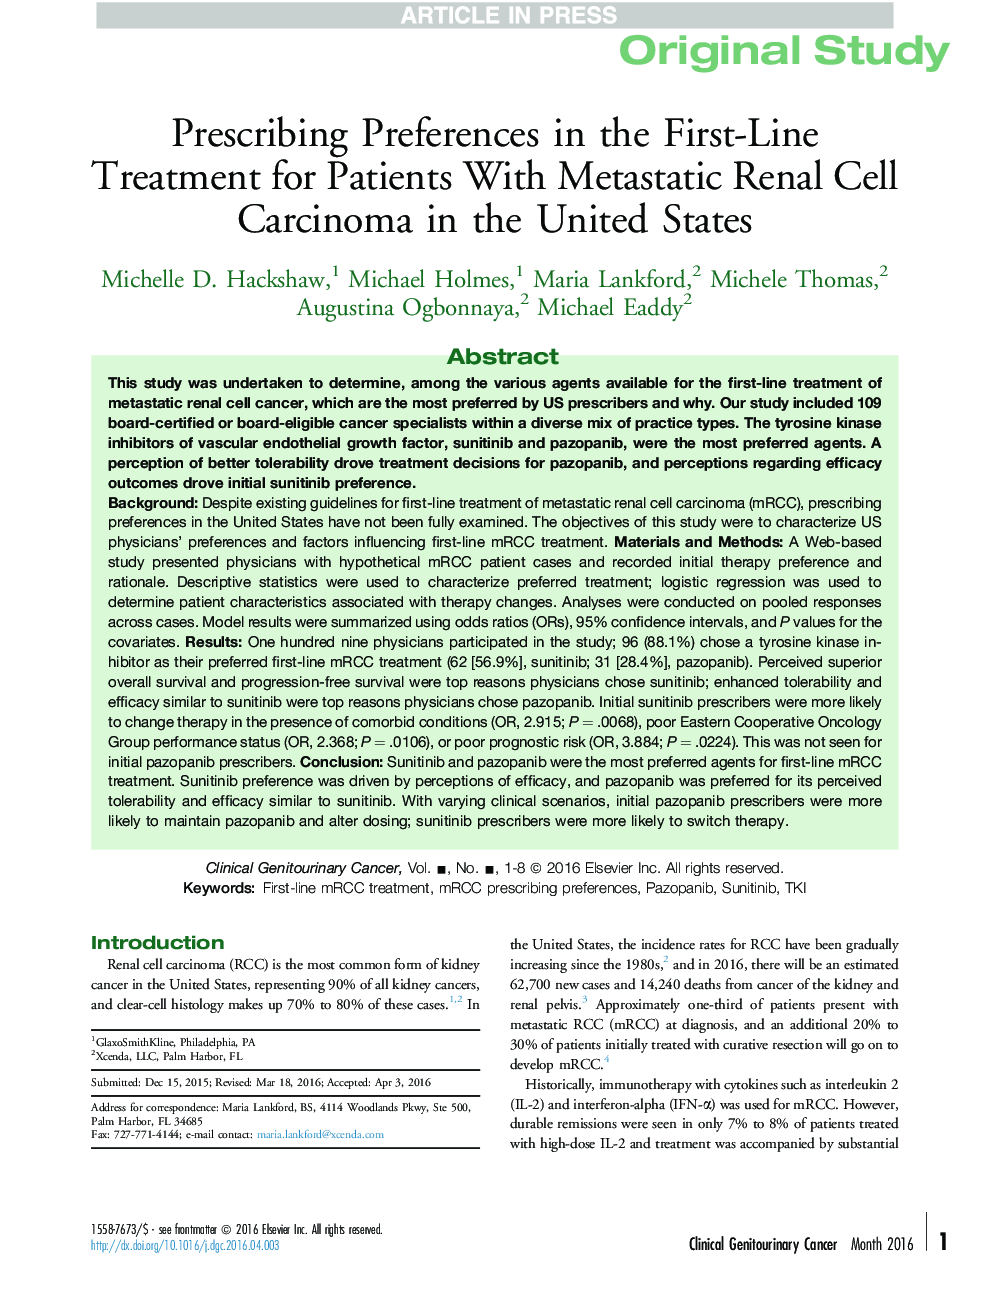 تجویز مقررات در درمان خط اول برای بیماران مبتلا به کارسینوم سلول های متاستاتیک کلیه در ایالات متحده 